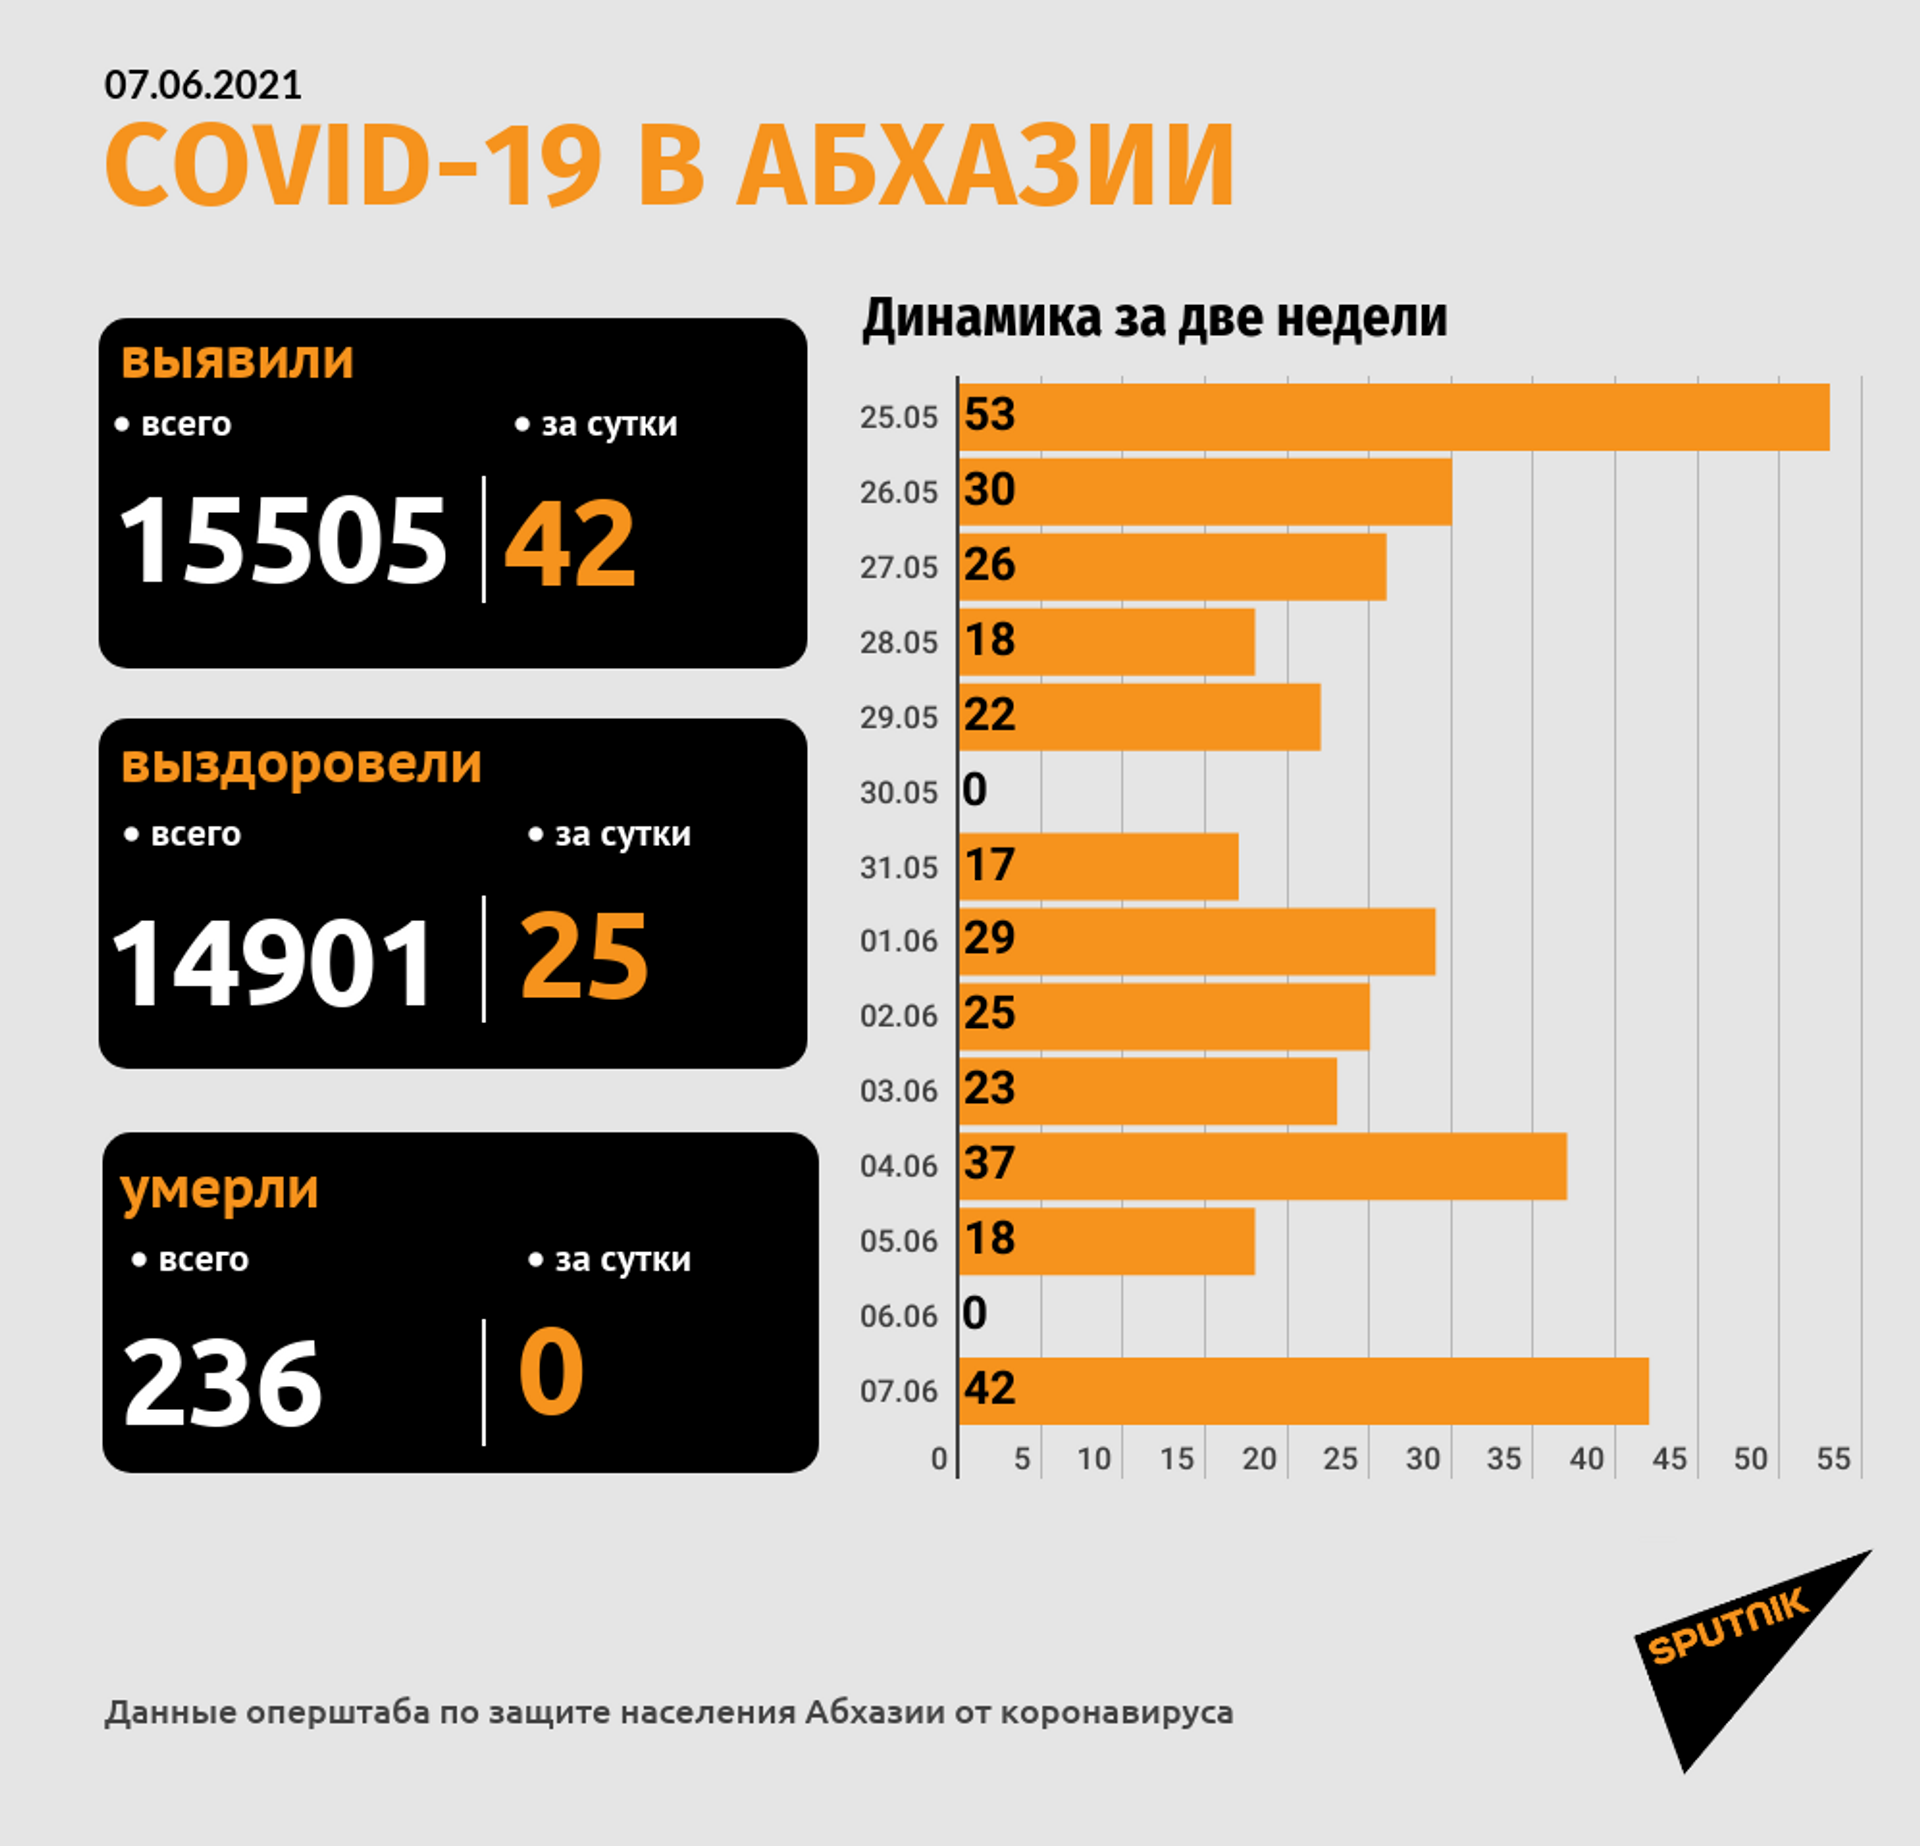 Еще 42 новых случая COVID-19 зафиксировано в Абхазии - Sputnik Абхазия, 1920, 07.06.2021